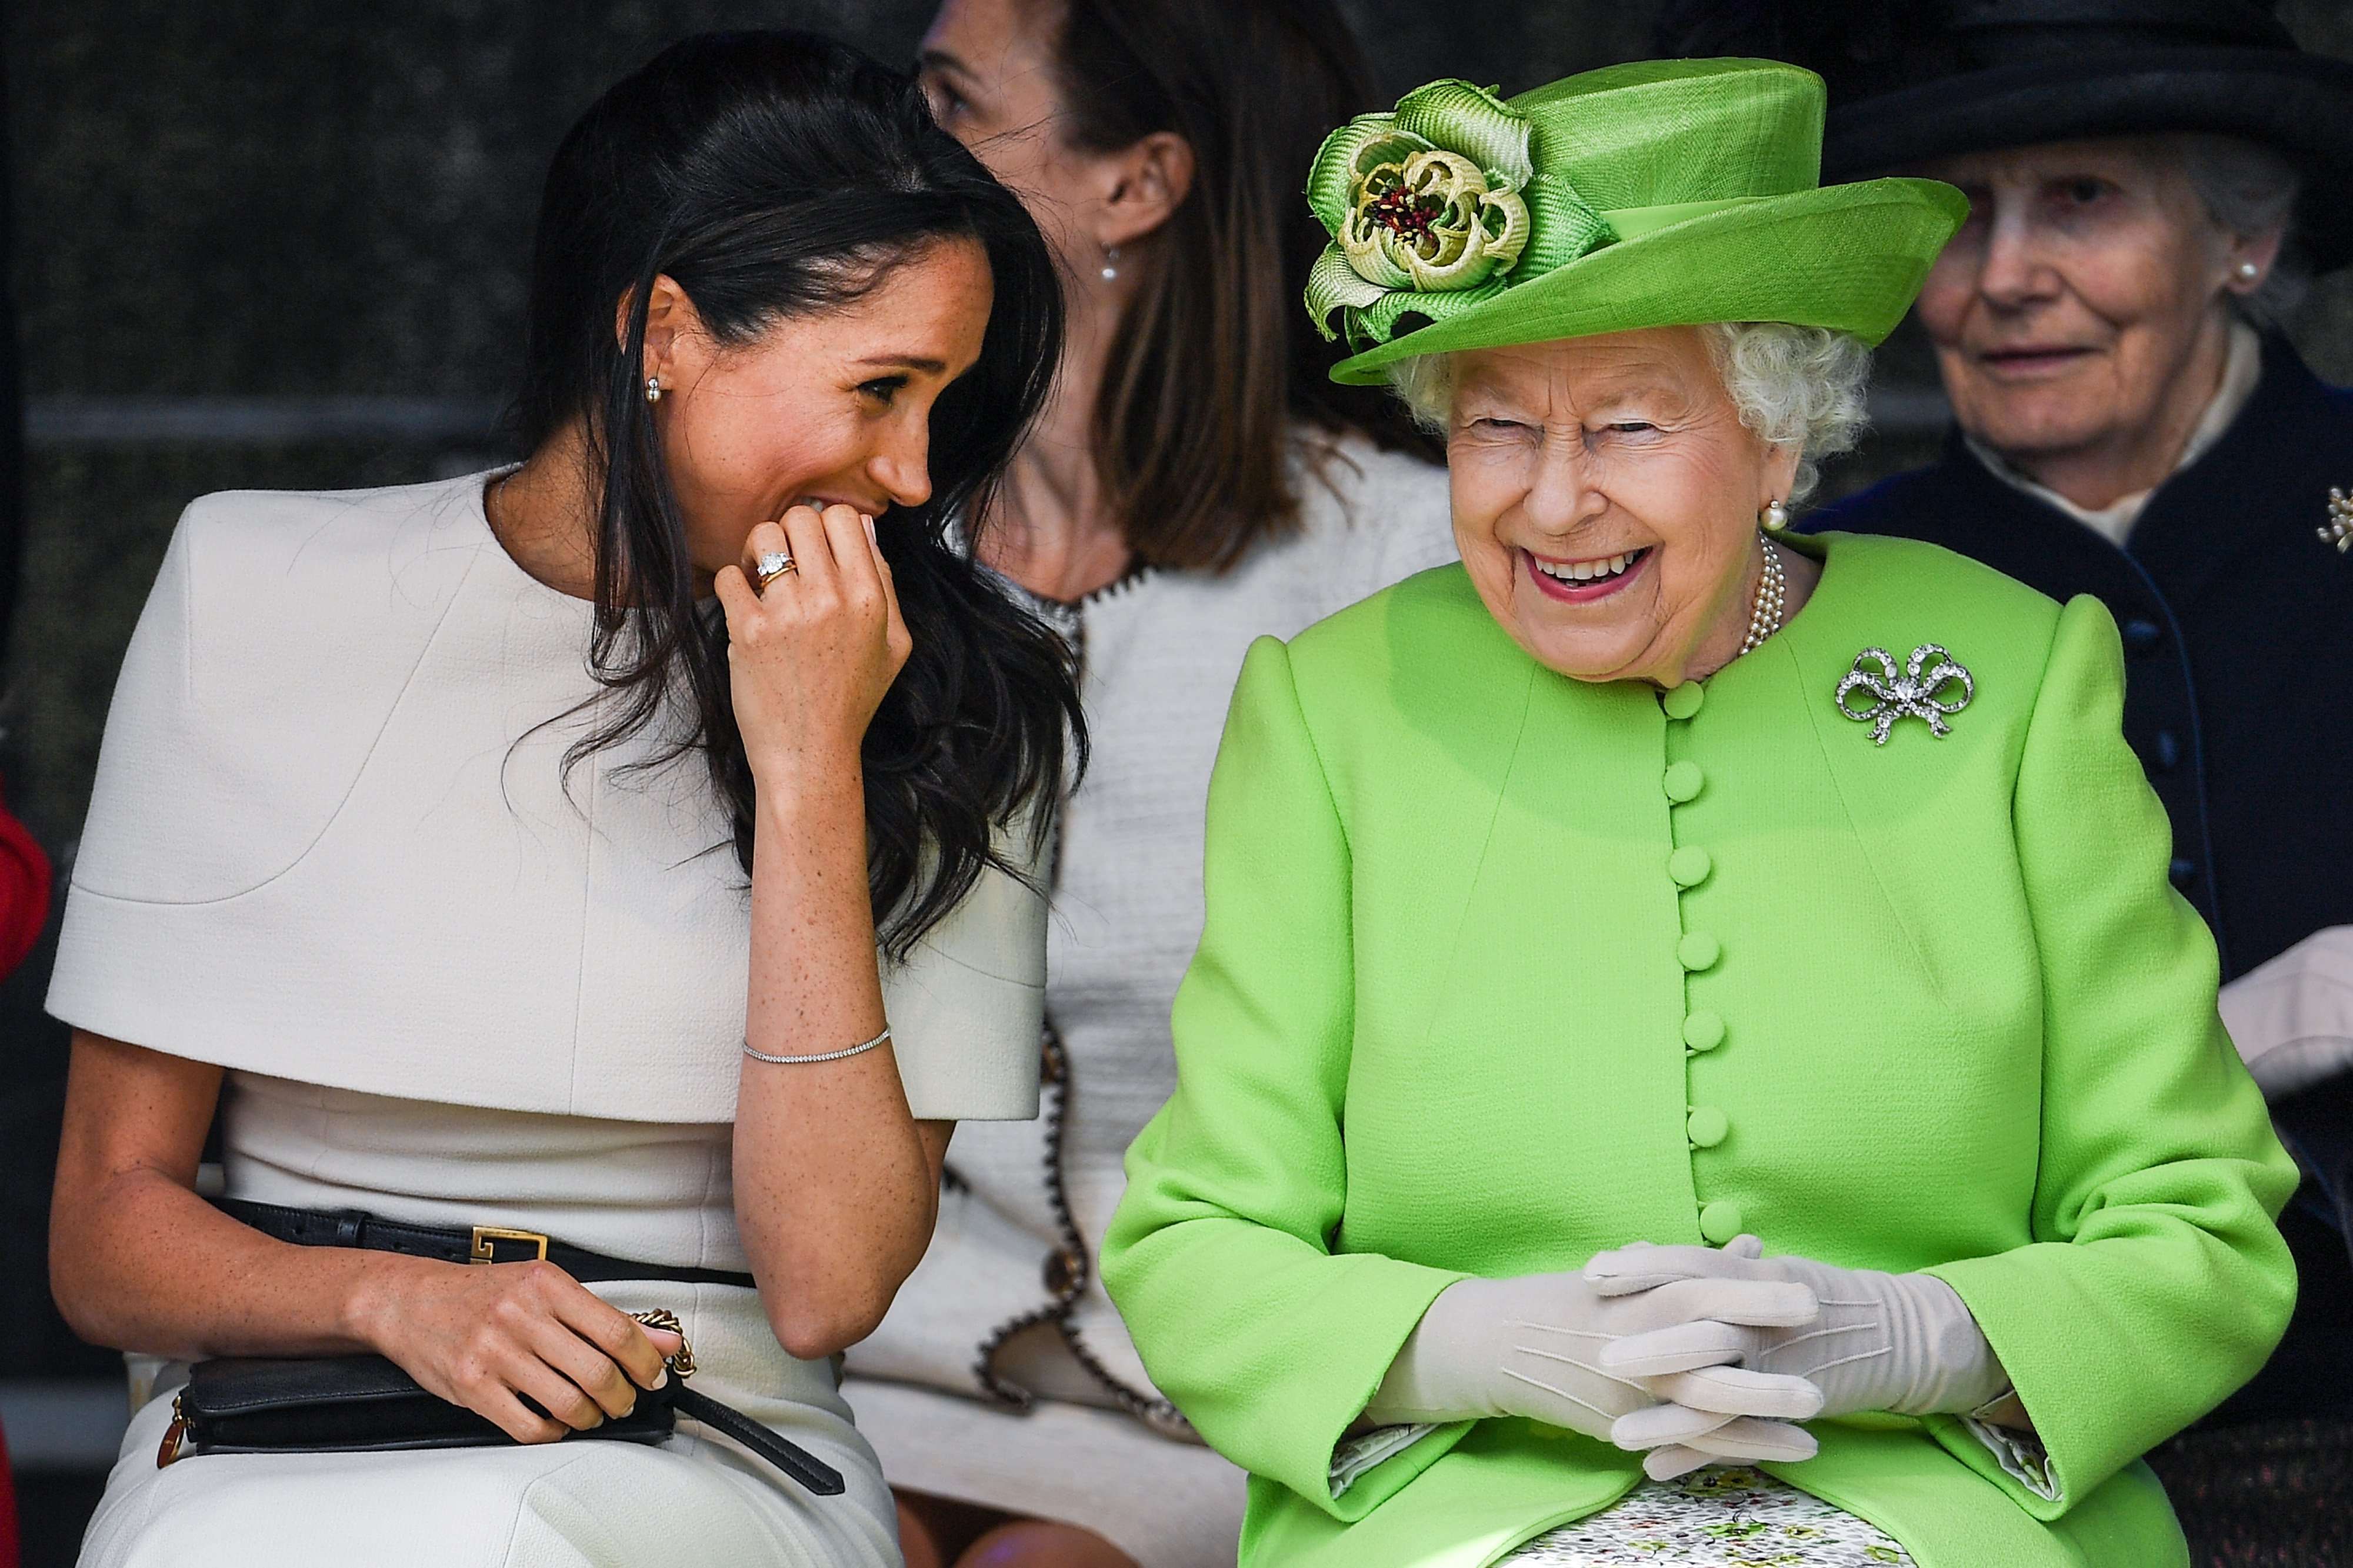 La reine Élisabeth II est assise et rit avec Meghan, duchesse de Sussex, lors d'une cérémonie d'inauguration du nouveau pont Mersey Gateway le 14 juin 2018 dans la ville de Widnes à Halton, Cheshire, Angleterre | Source : Getty Images